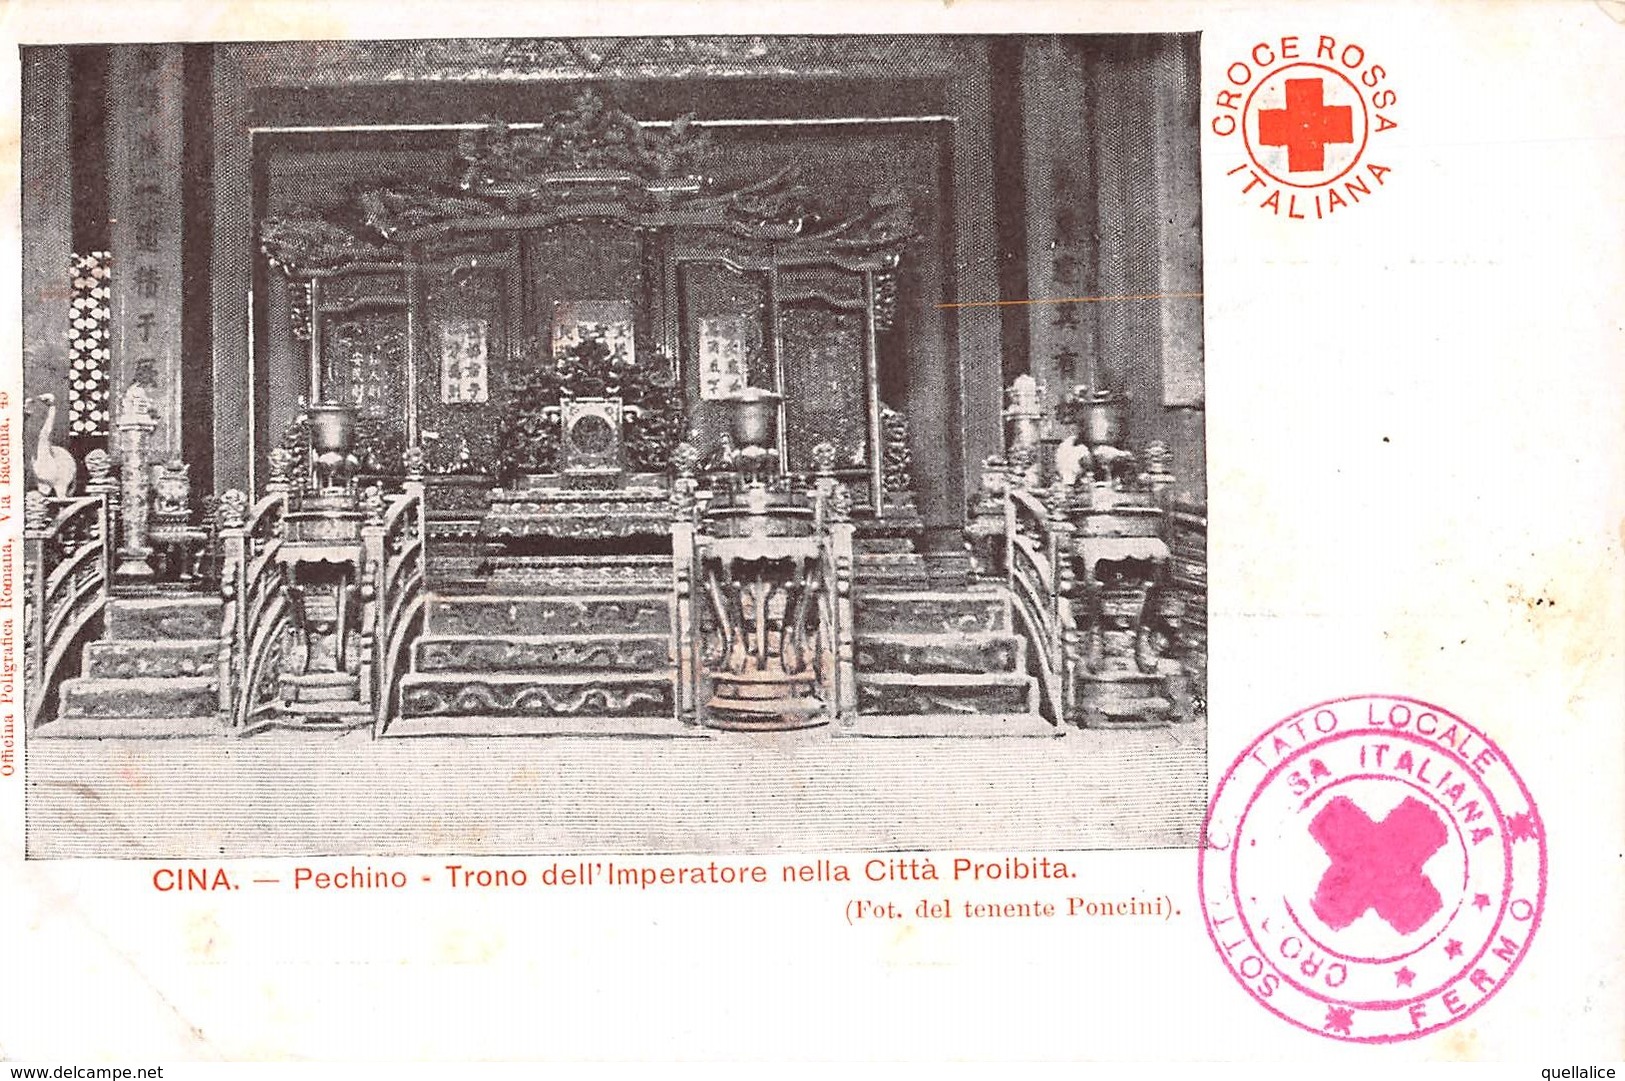 1179 "CINA - PECHINO - TRONO DELL'IMPERATORE NELLA CITTA' PROIBITA - CROCE ROSSA - FOTO TEN. PONCINI"  CART  NON SPED - China